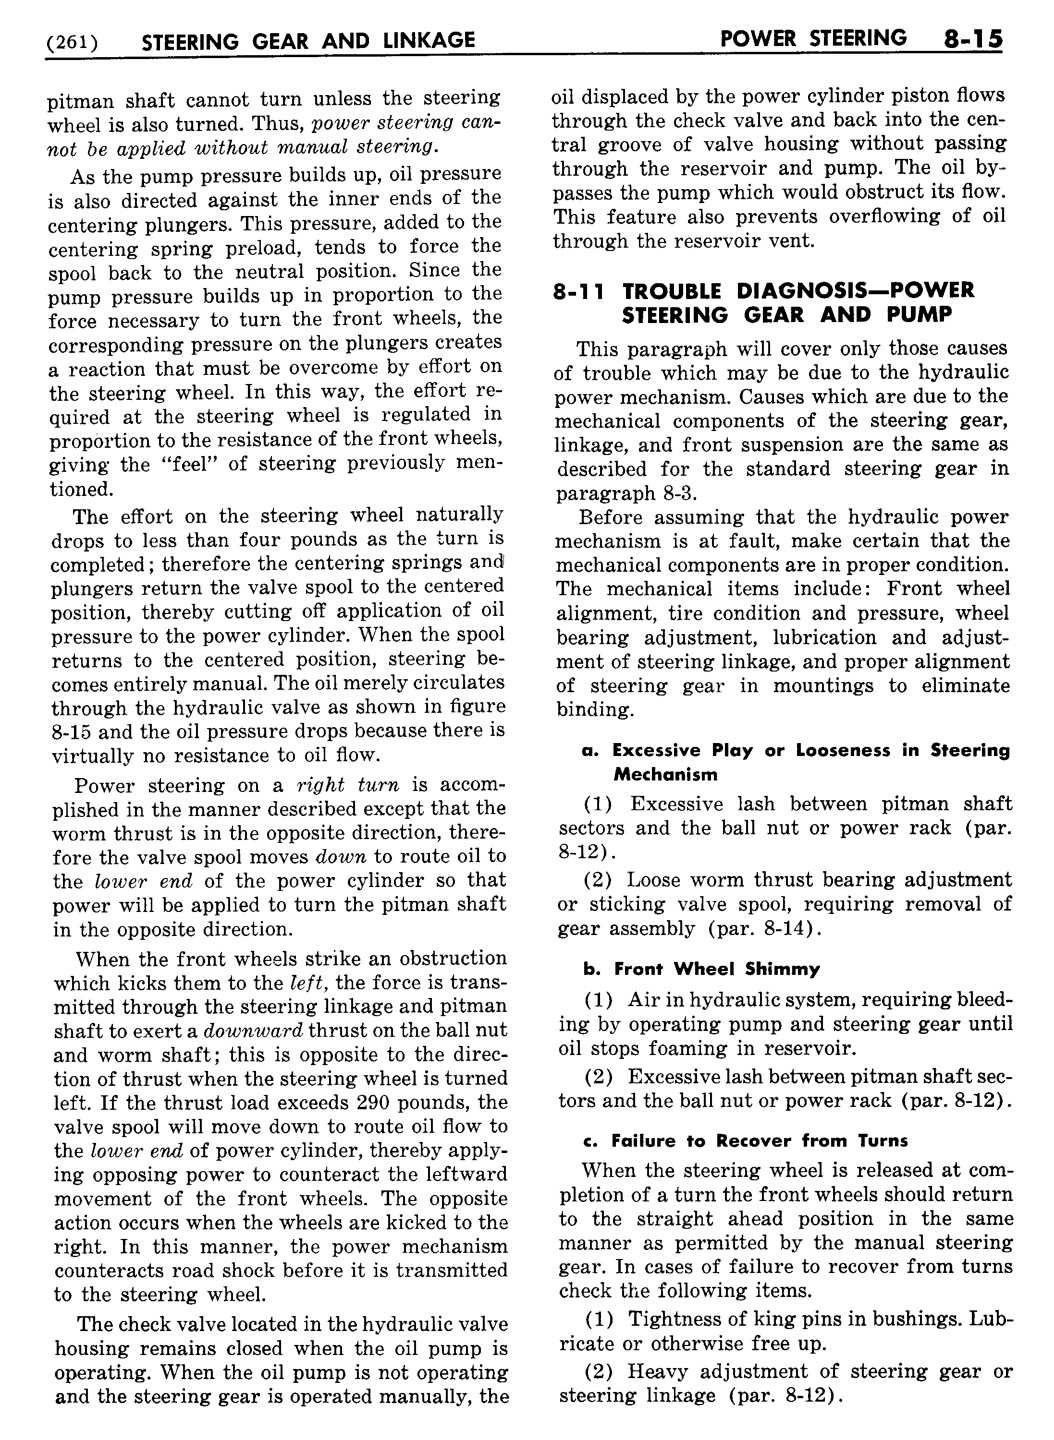 n_09 1955 Buick Shop Manual - Steering-015-015.jpg